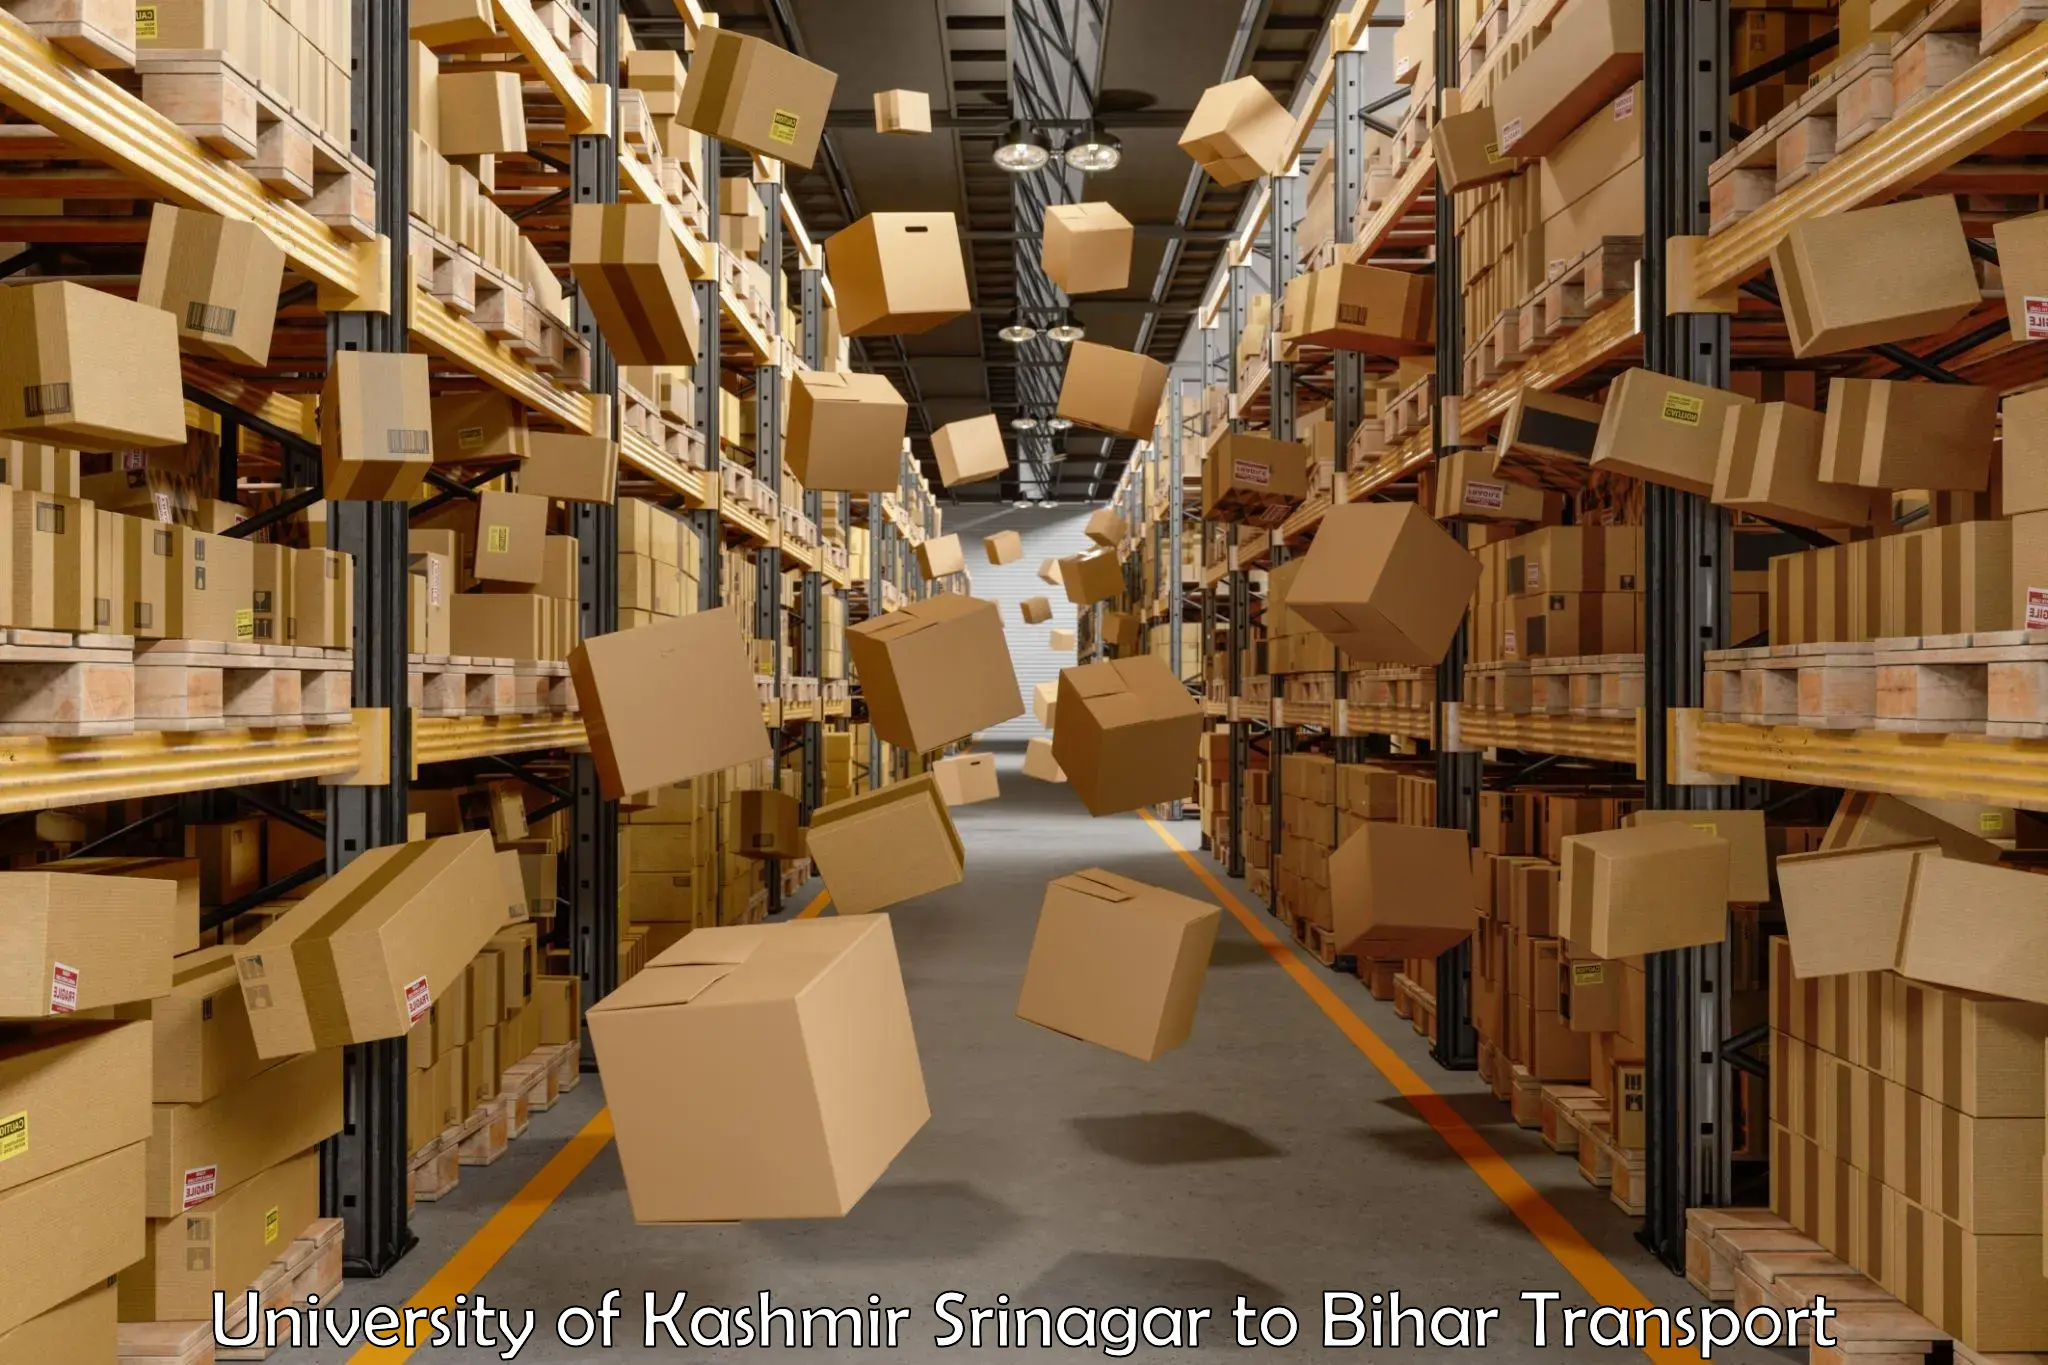 Lorry transport service University of Kashmir Srinagar to Patna